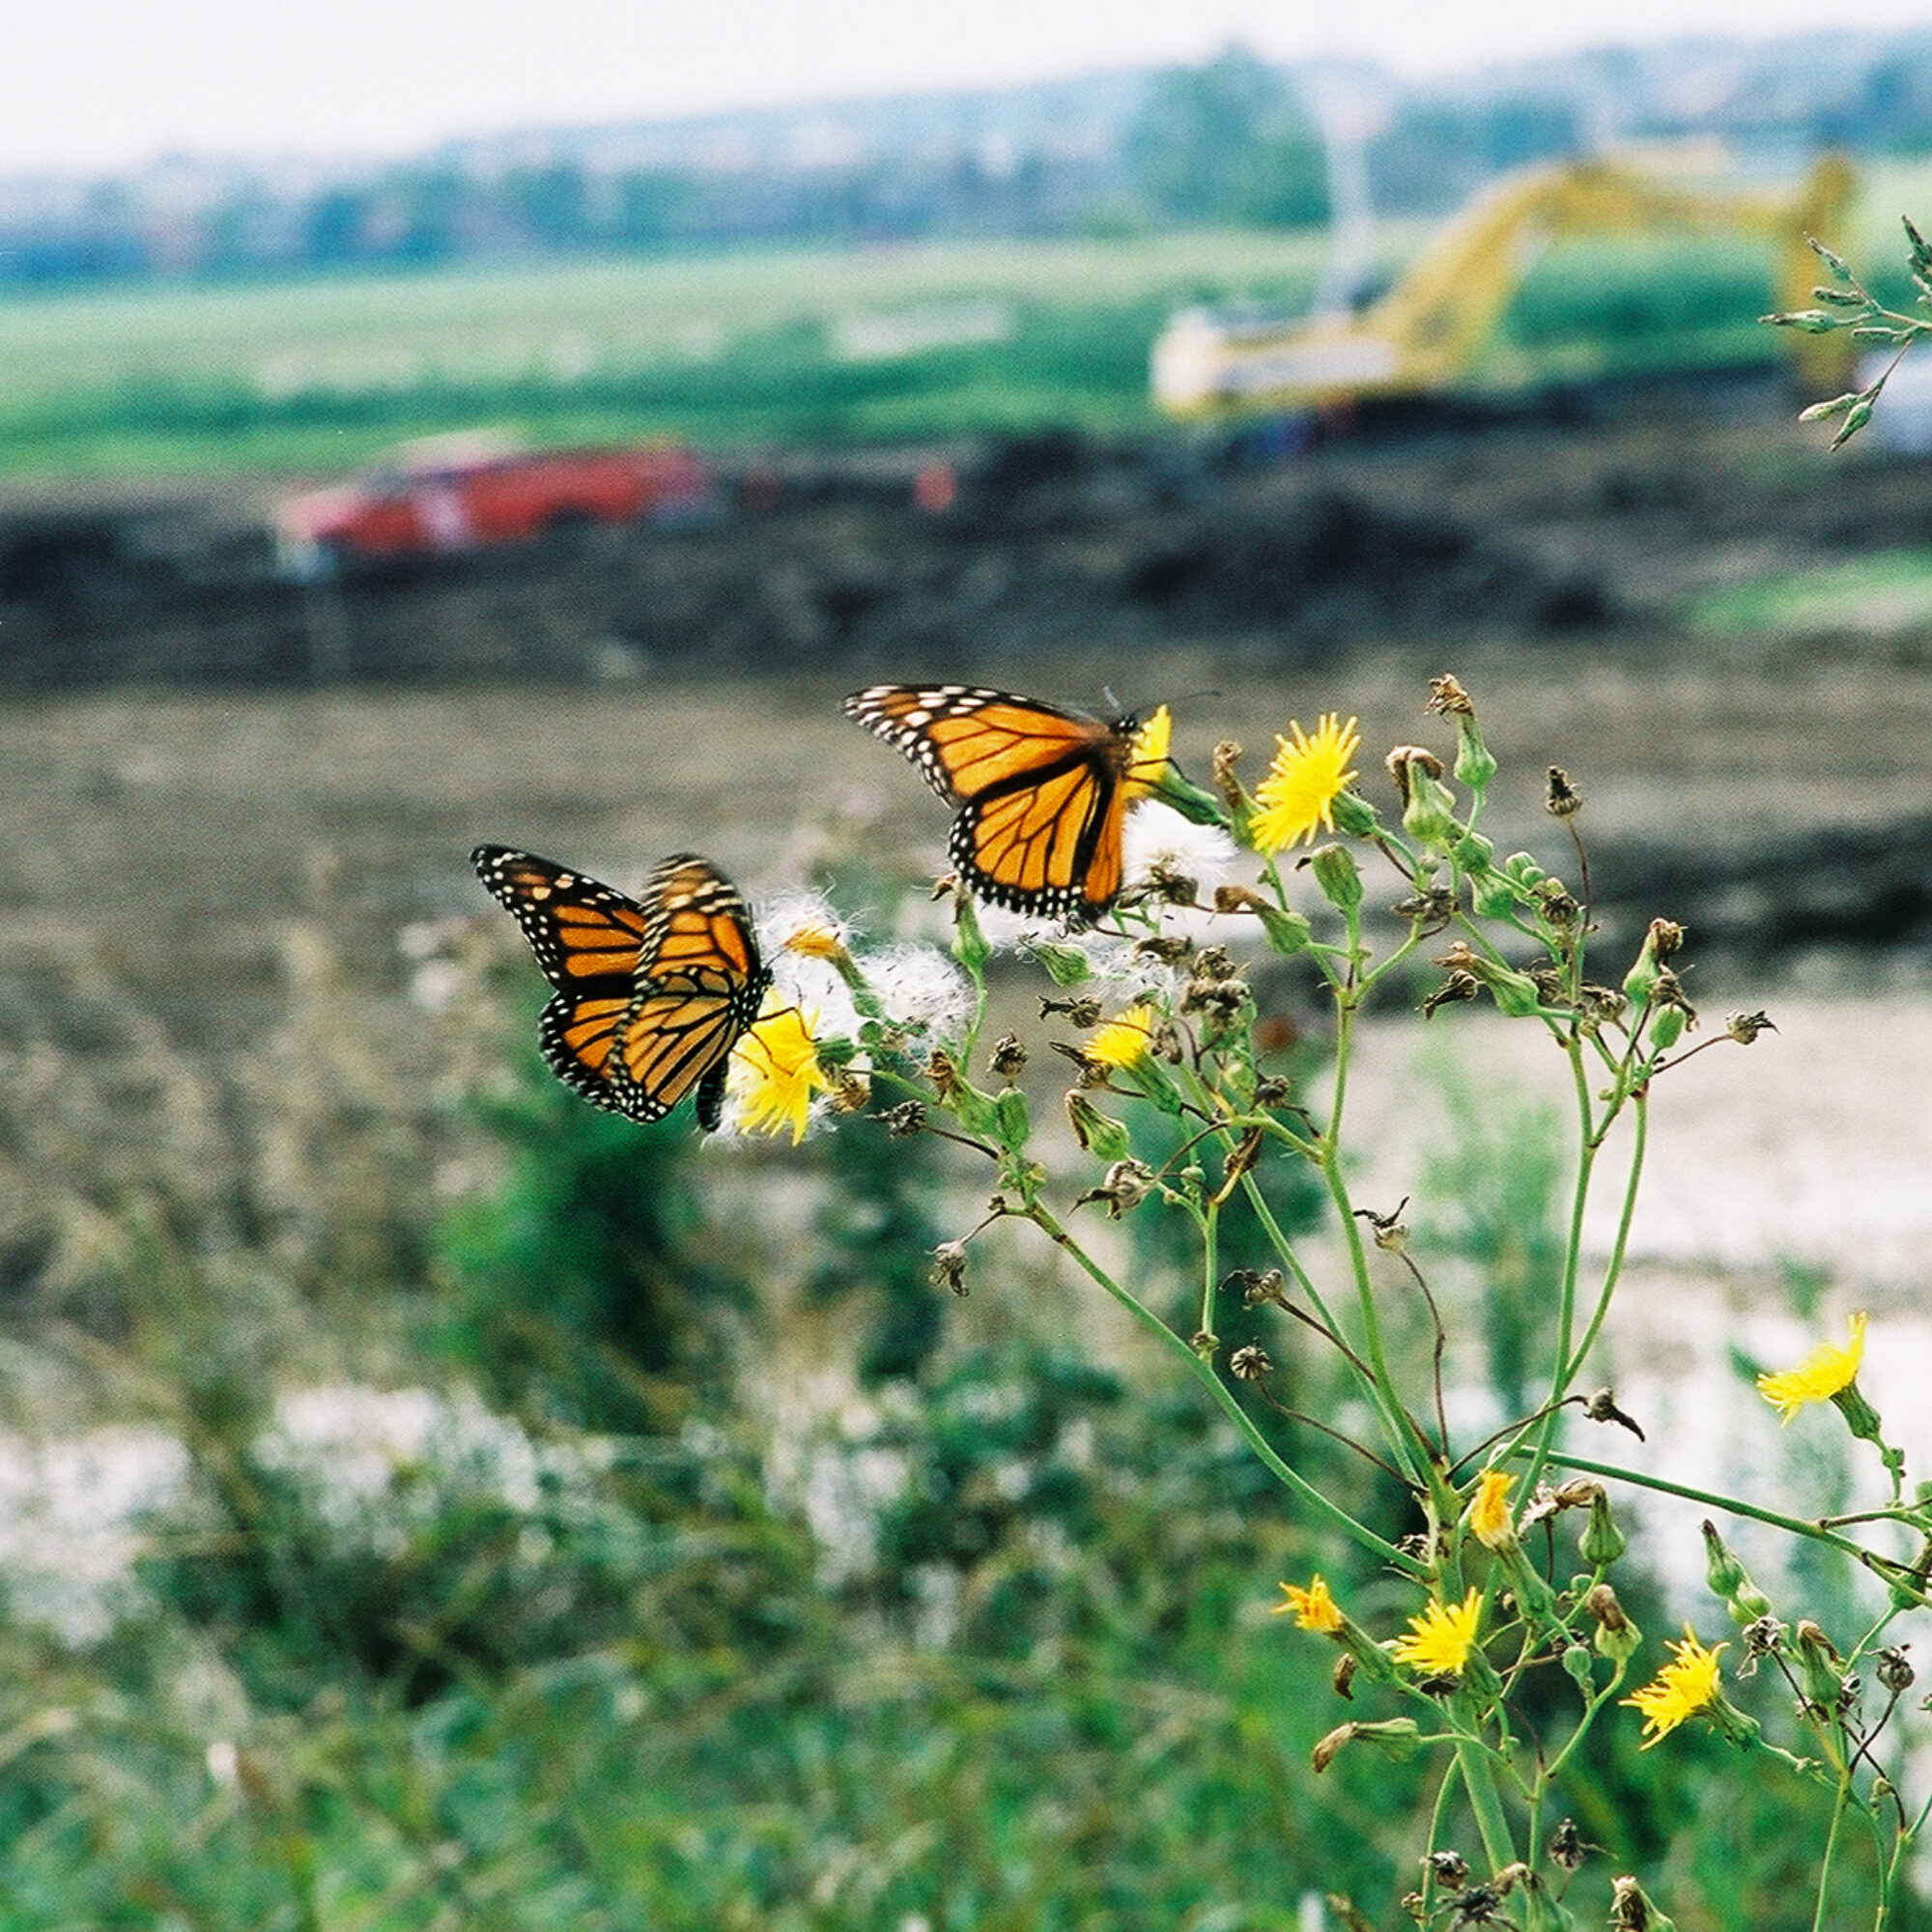 SC 2003 08 05 butterflies in meadow at groundbreaking 012